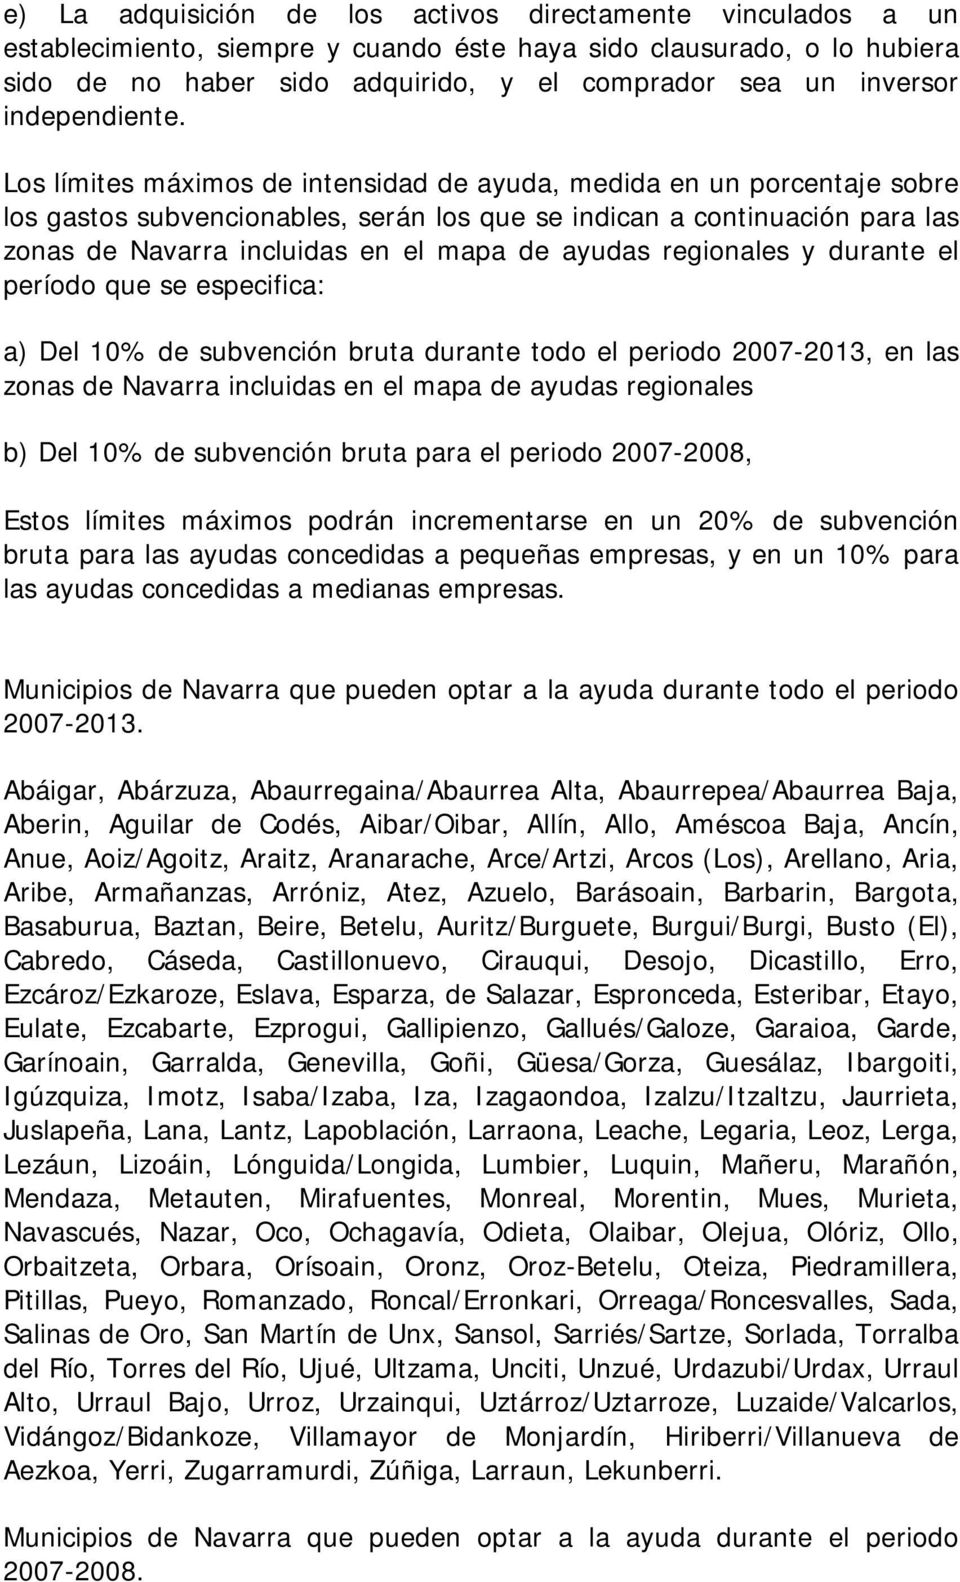 Los límites máximos de intensidad de ayuda, medida en un porcentaje sobre los gastos subvencionables, serán los que se indican a continuación para las zonas de Navarra incluidas en el mapa de ayudas